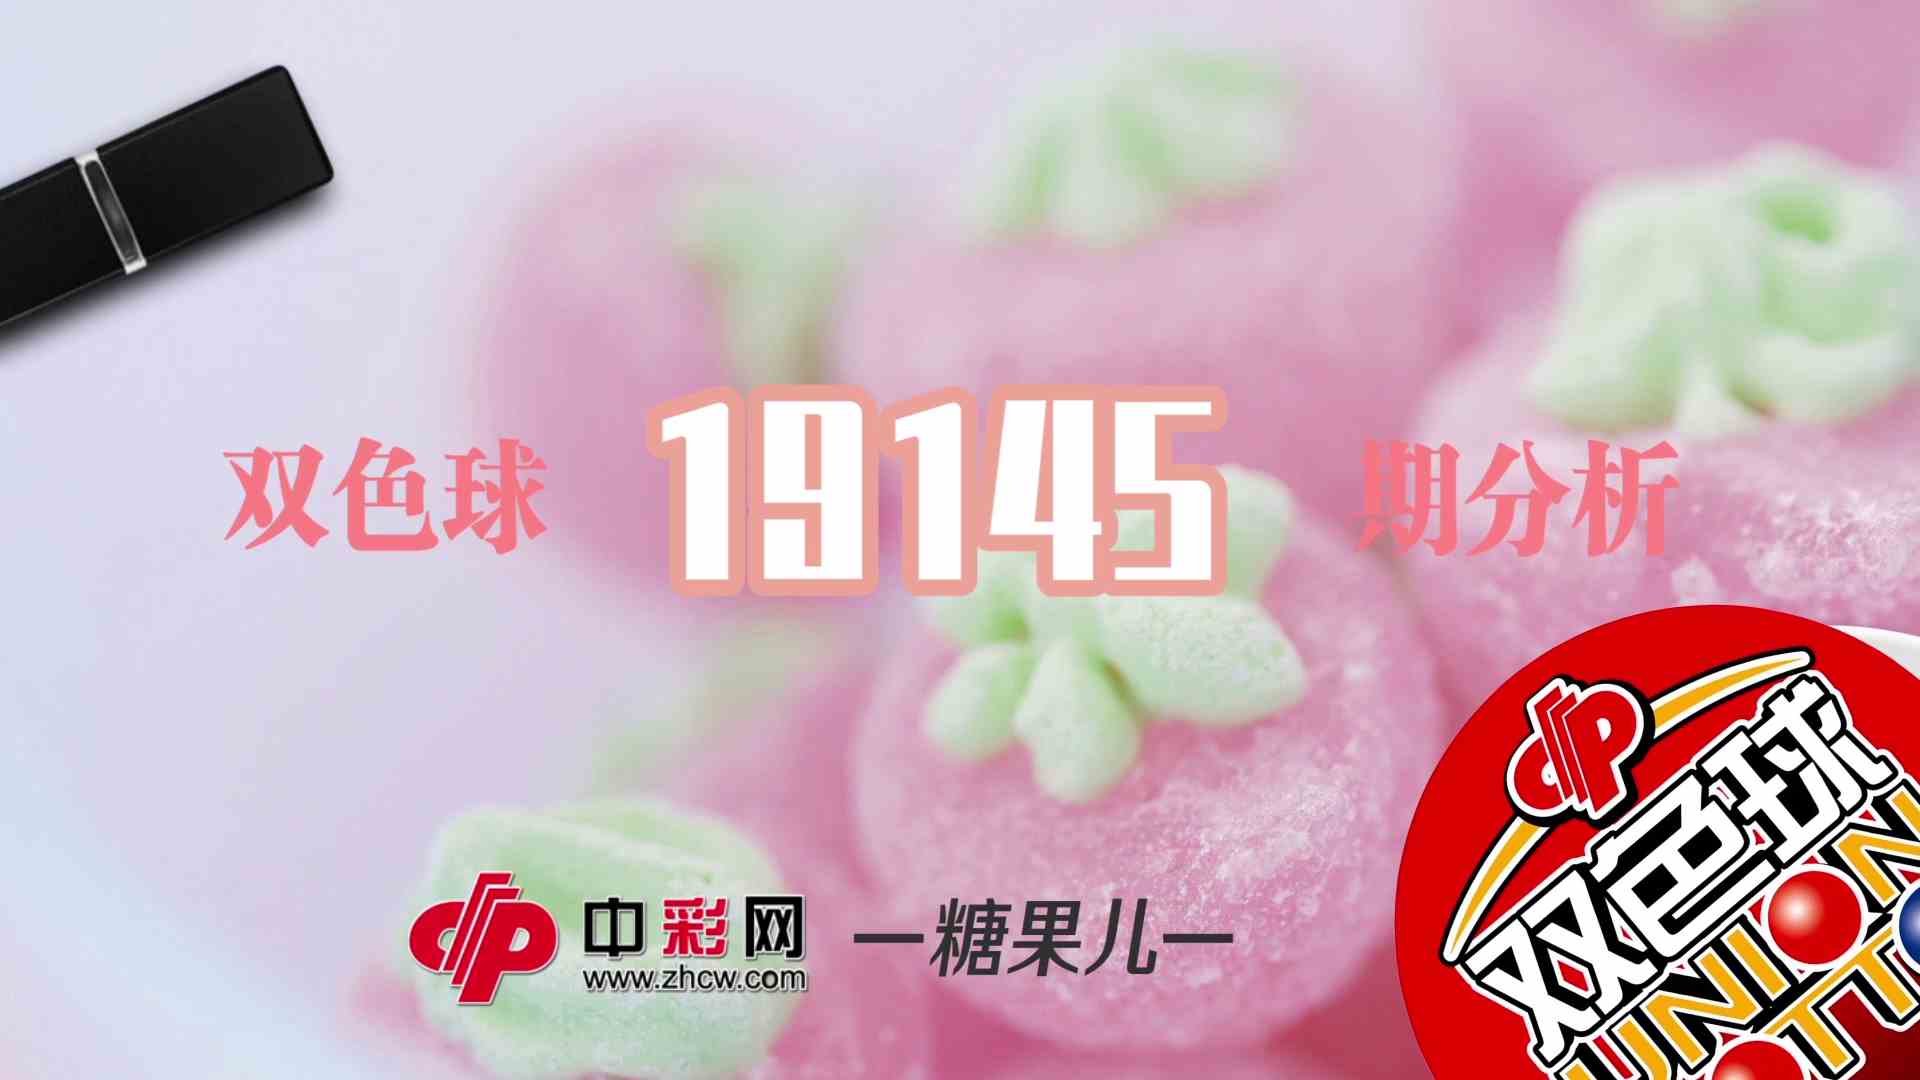 【中彩视频】糖果儿双色球第19145期